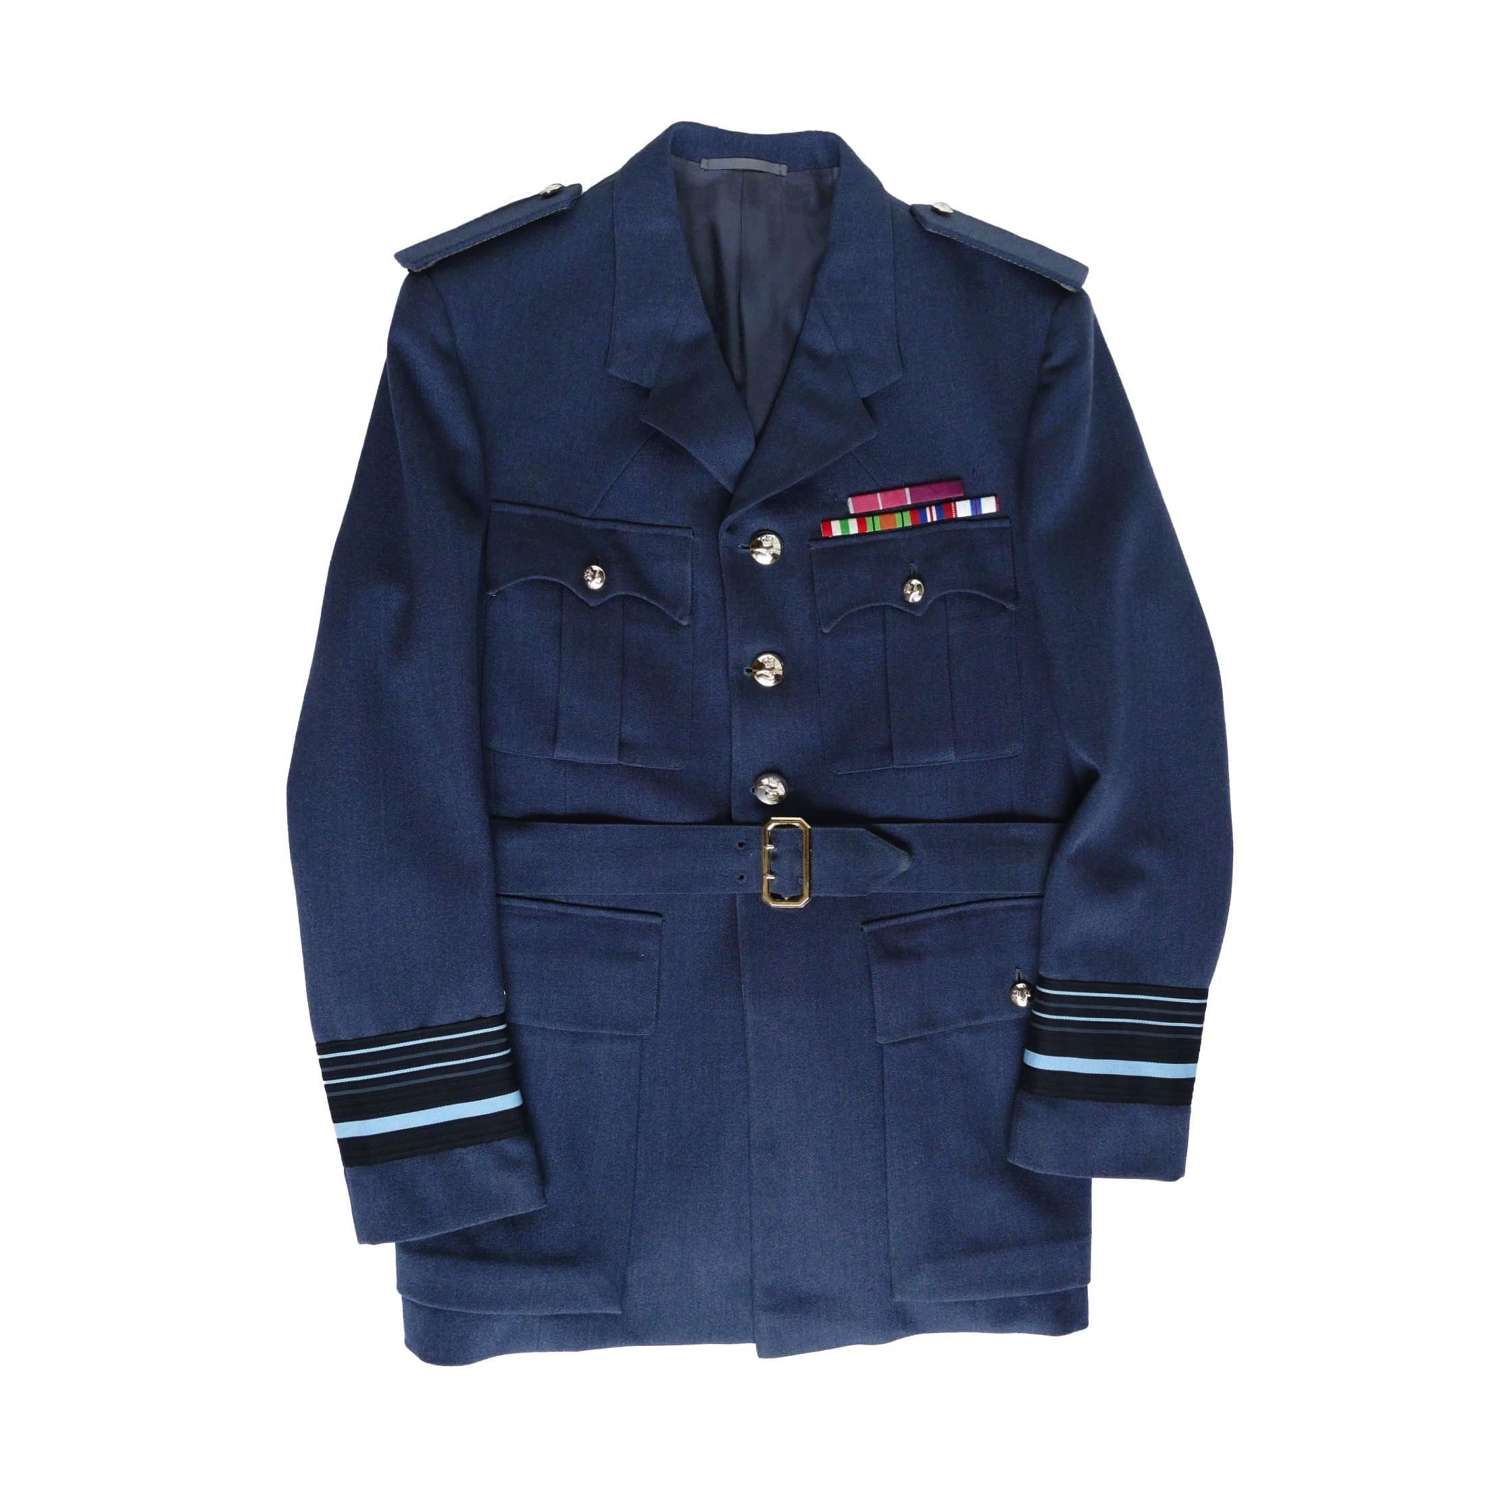 RAF uniforms - Air Marshall Sir Geoffrey Ford  (Free of charge!)